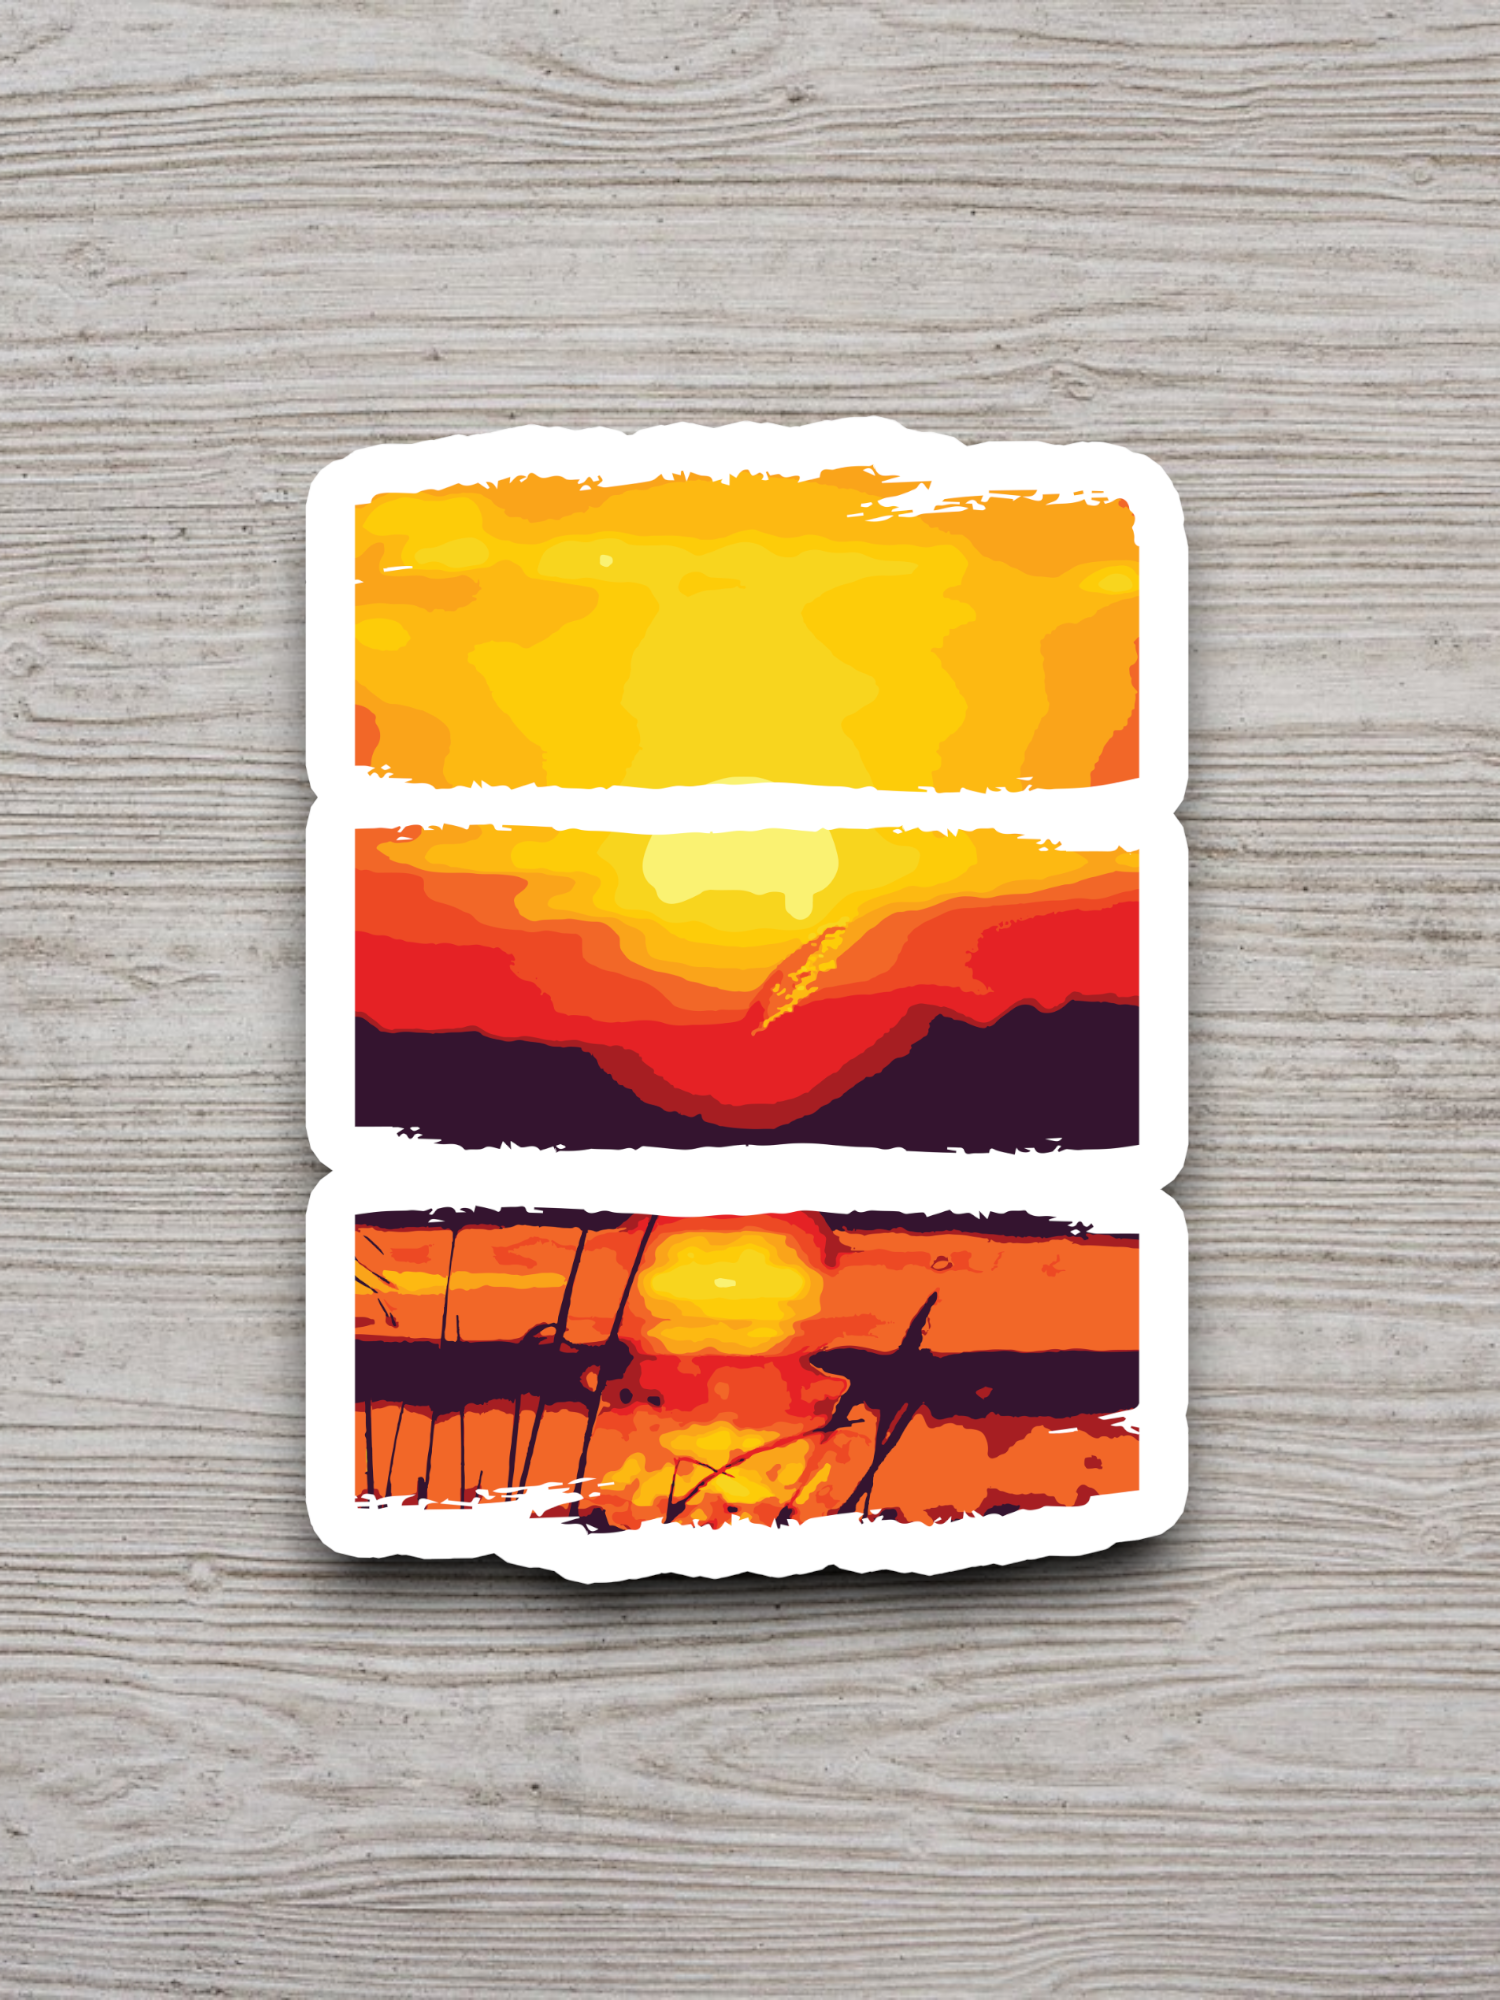 Artistic Sunset Scene - Travel Sticker